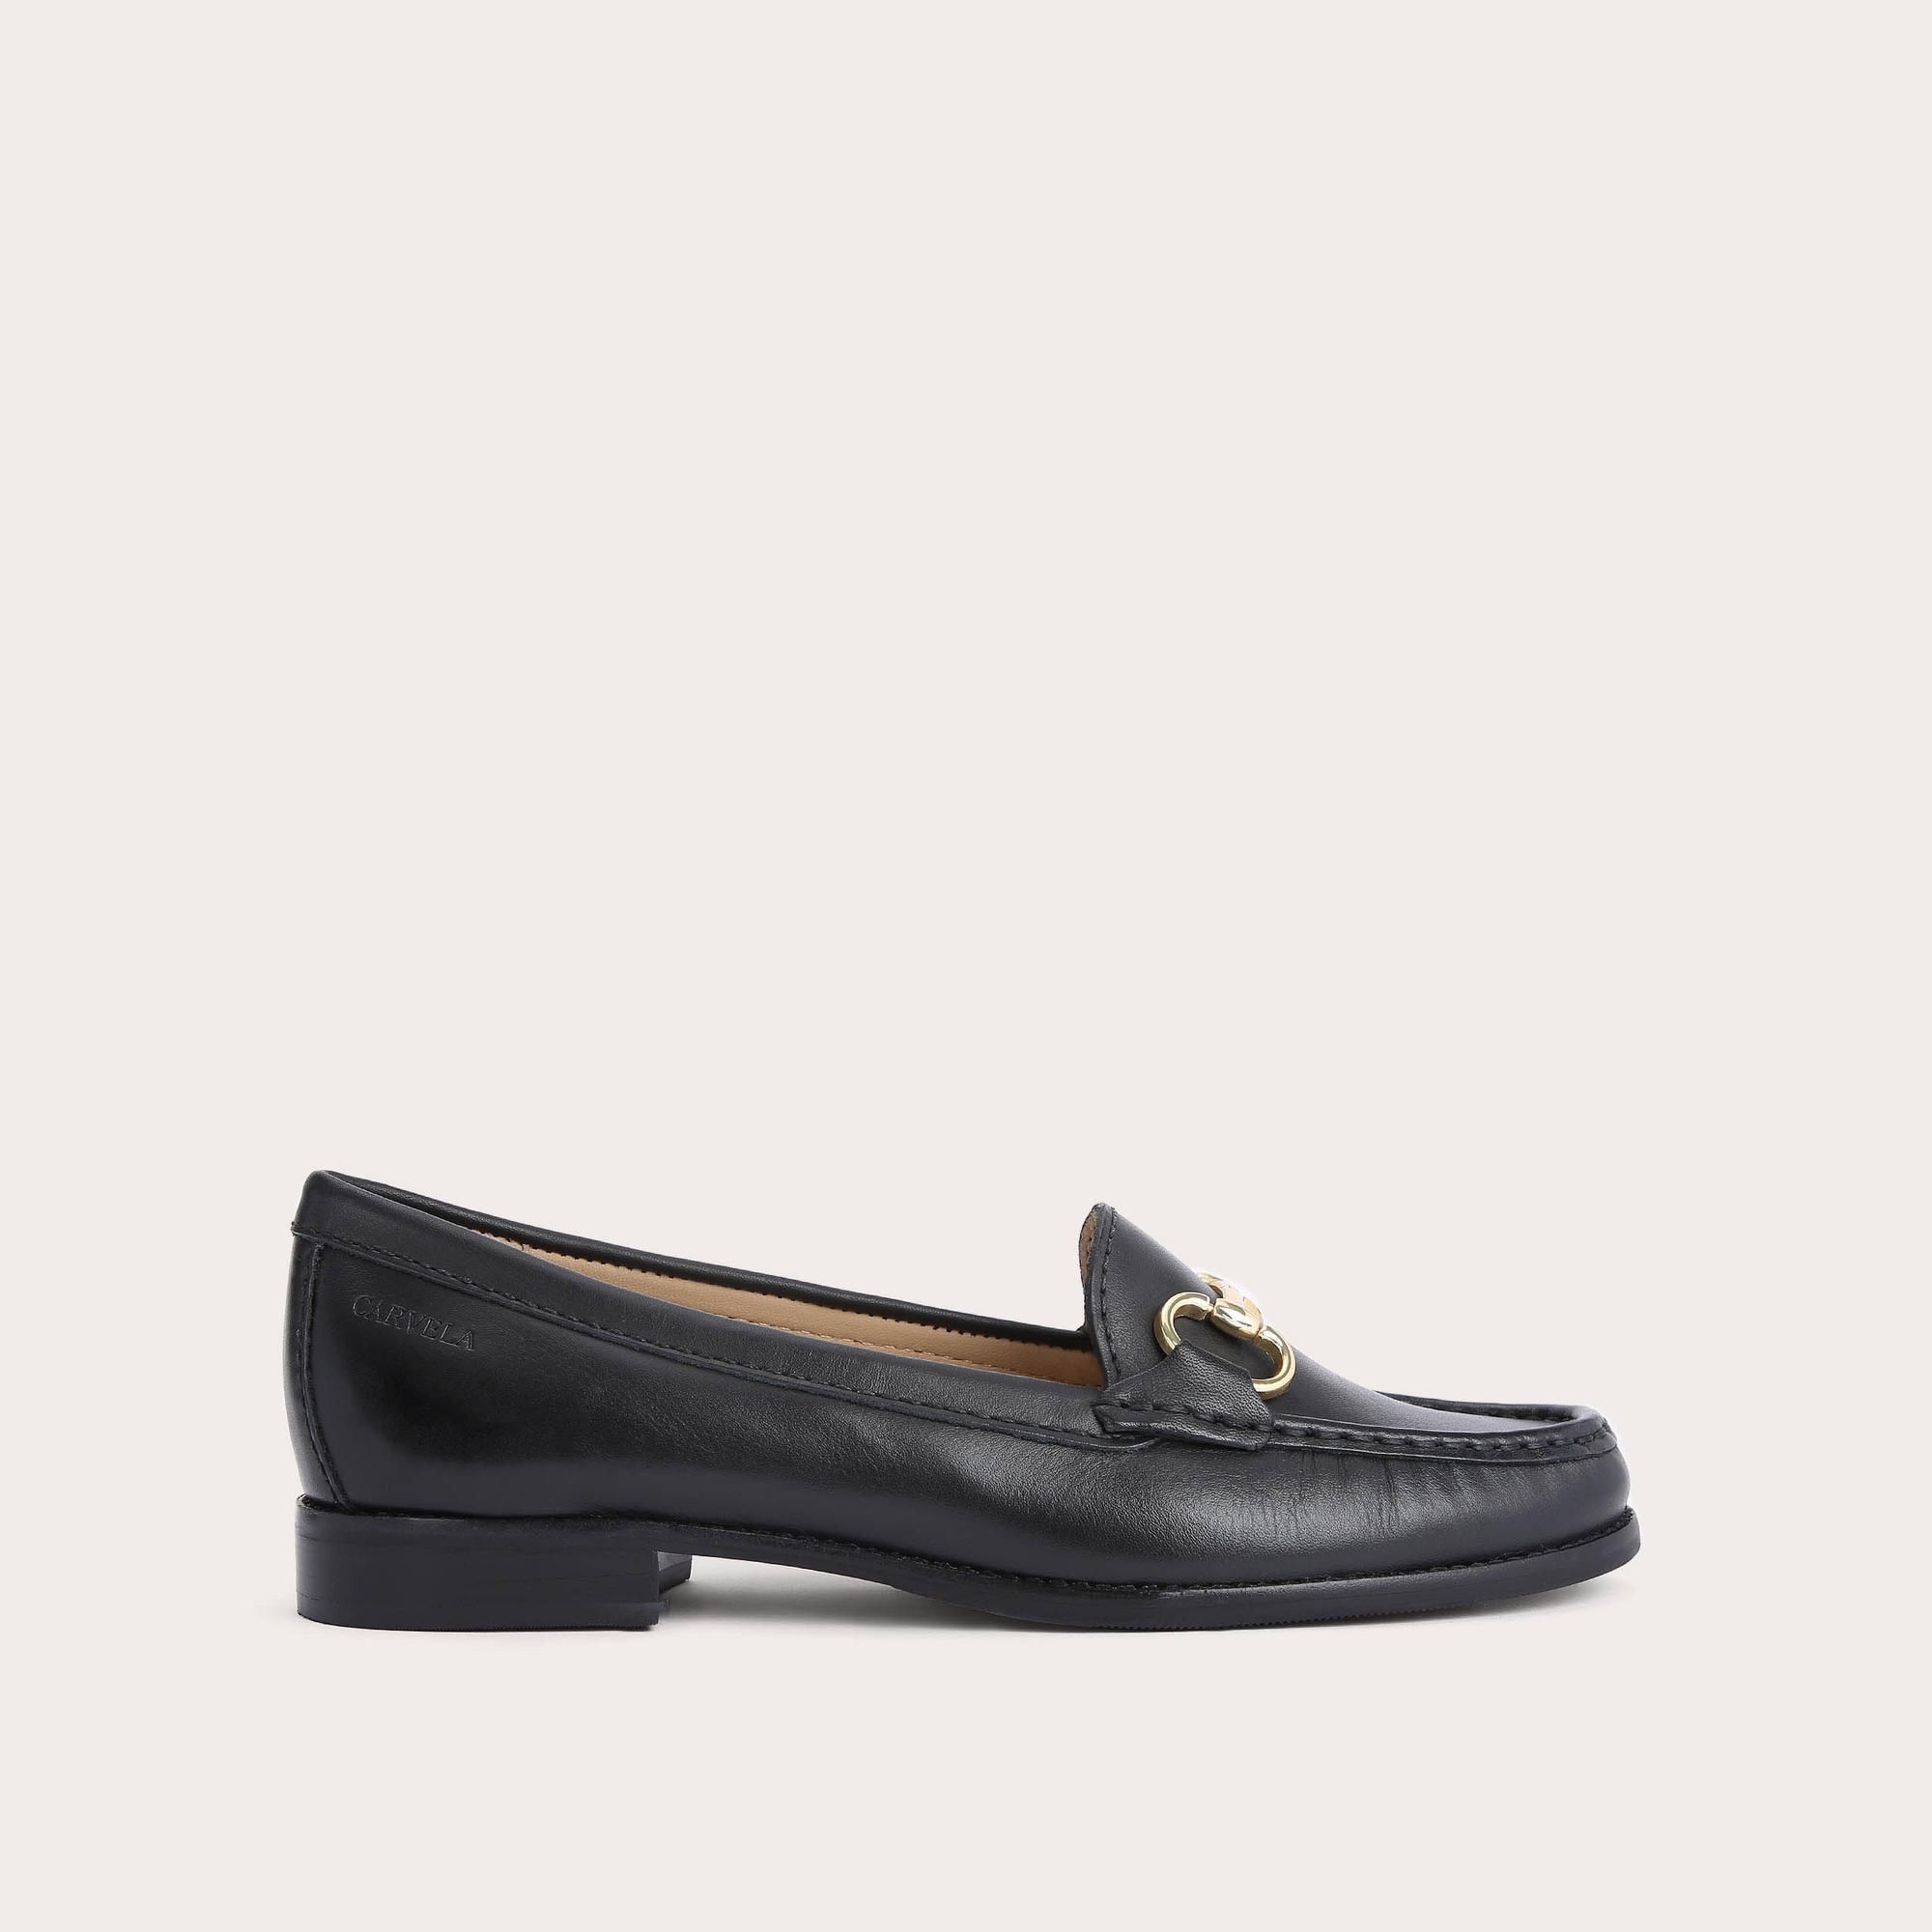 CLICK Black Leather Loafers by CARVELA COMFORT | Carvela